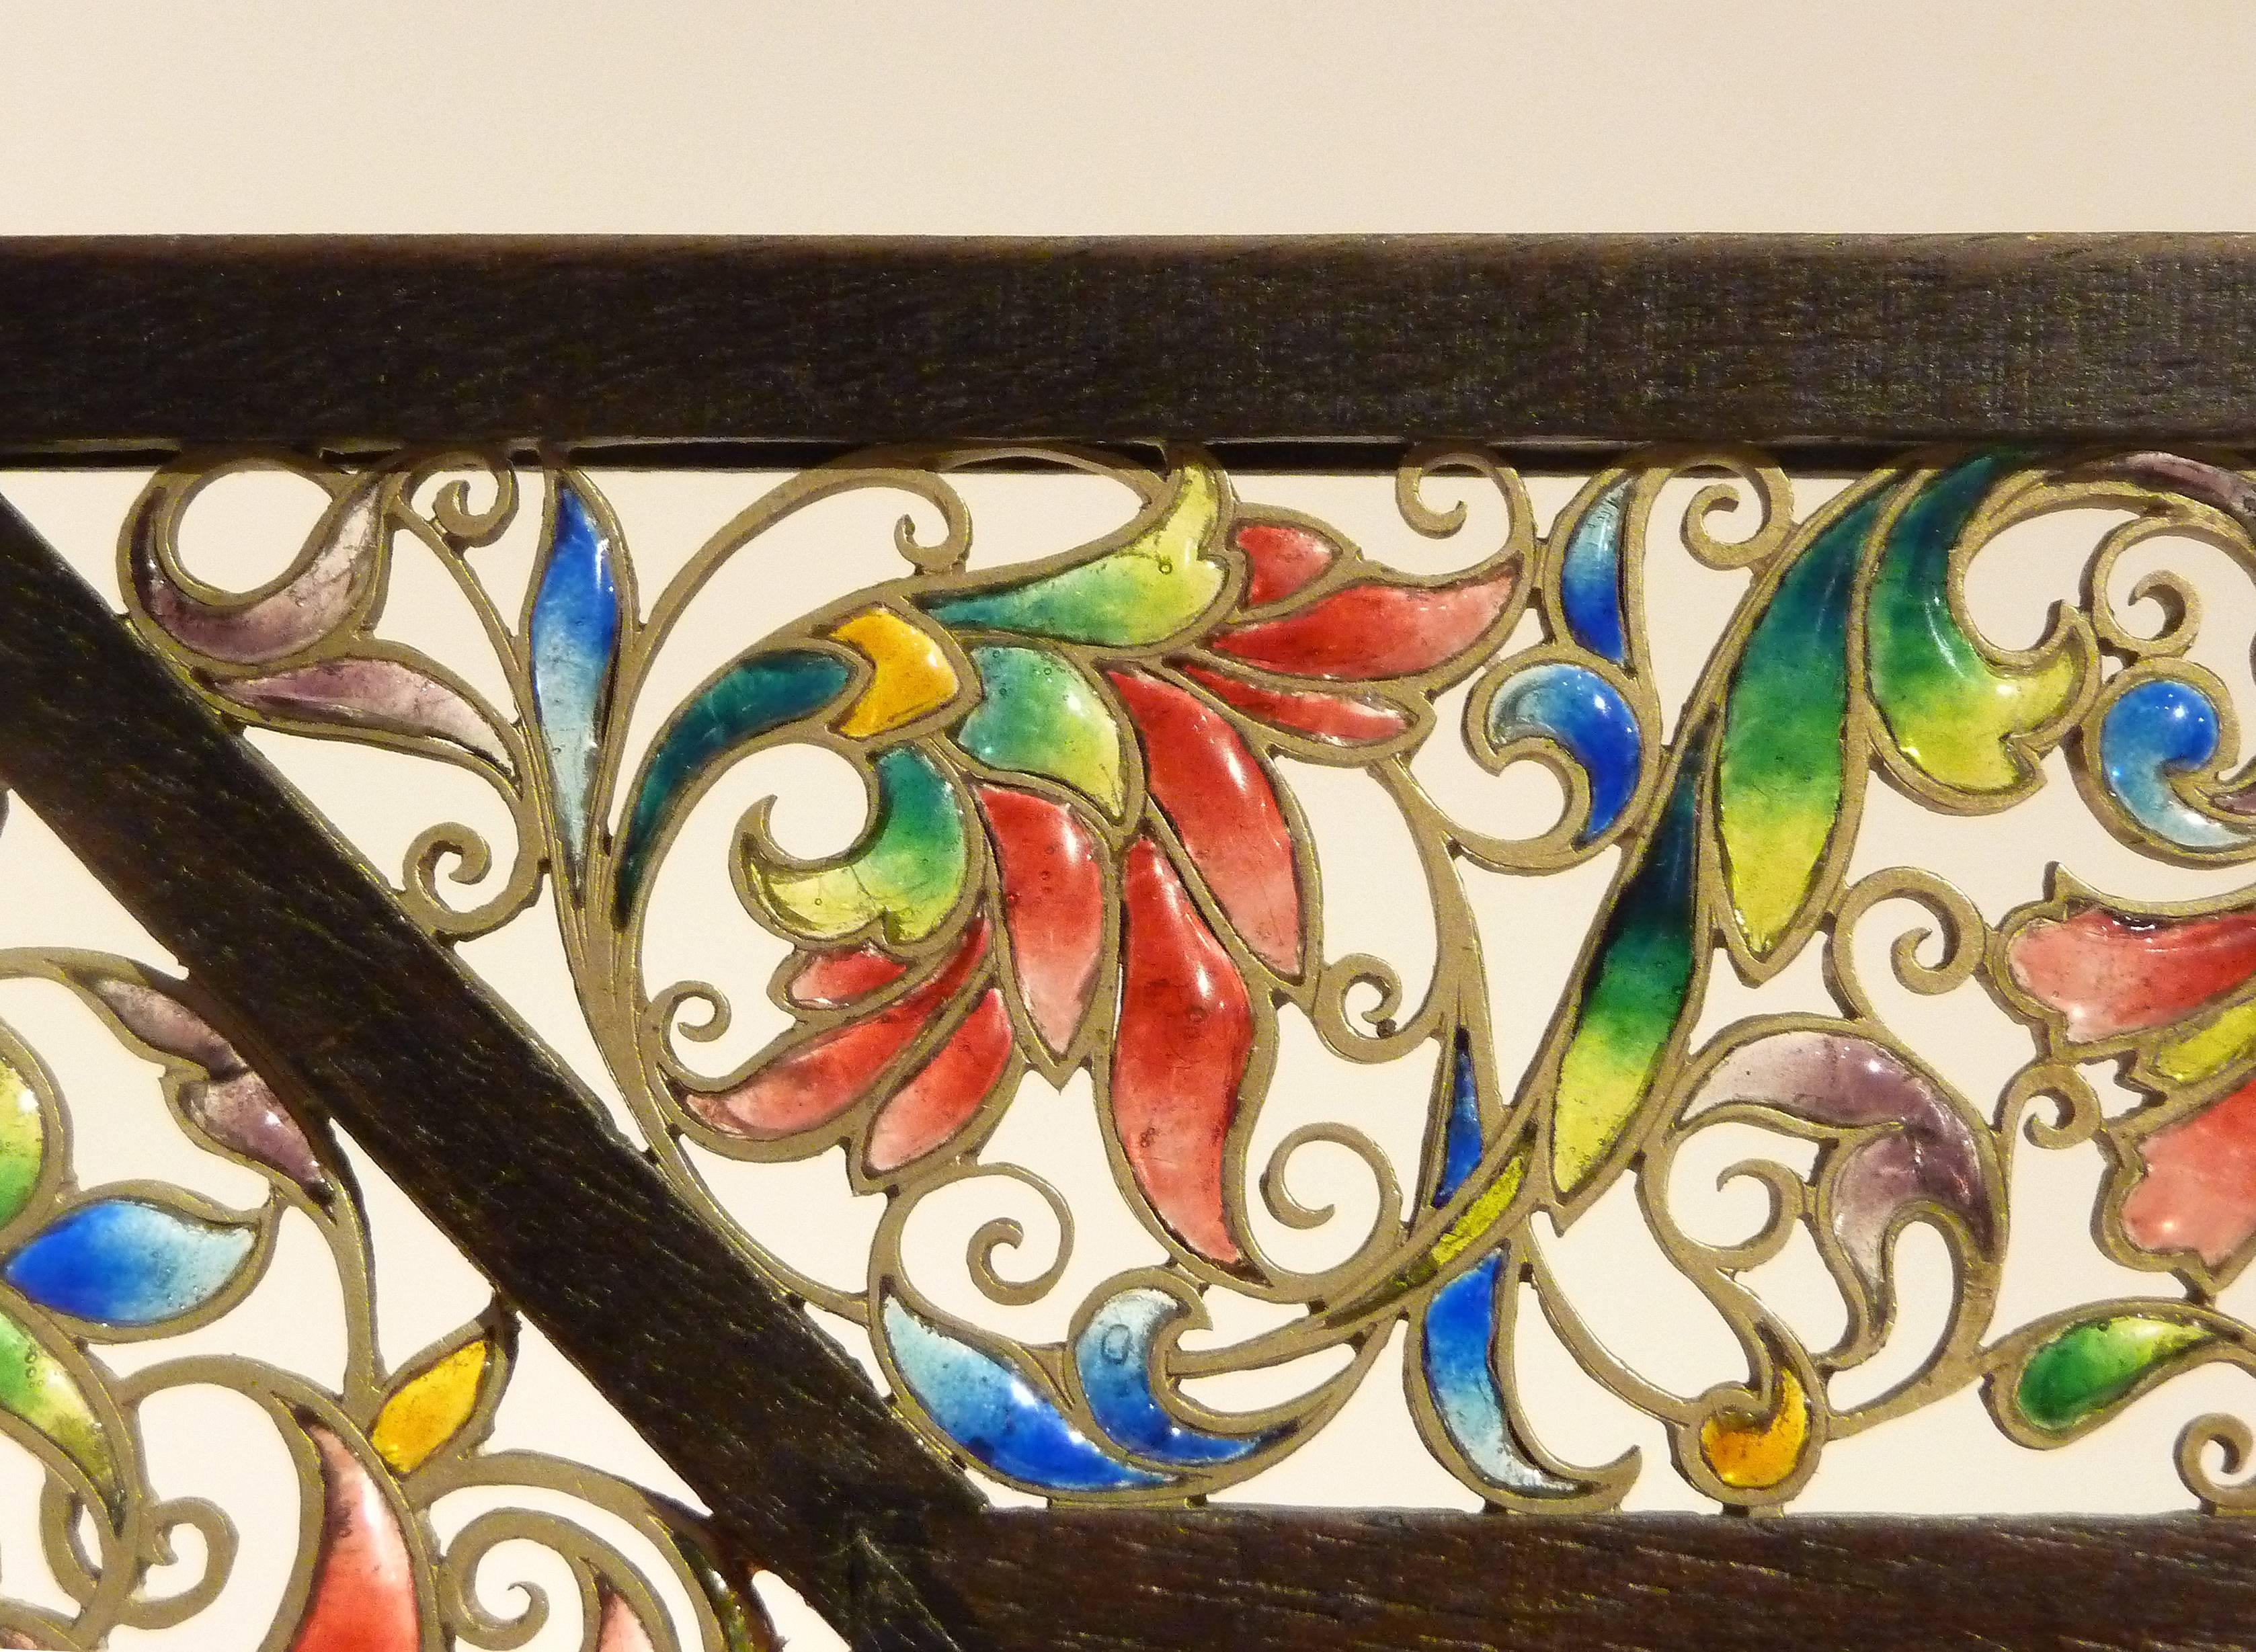 Enguerrand du suau de la croix.
Picture frame.
Polychrome translucent enamels, "plique-à-jour", silver.
Modern wooden frame.